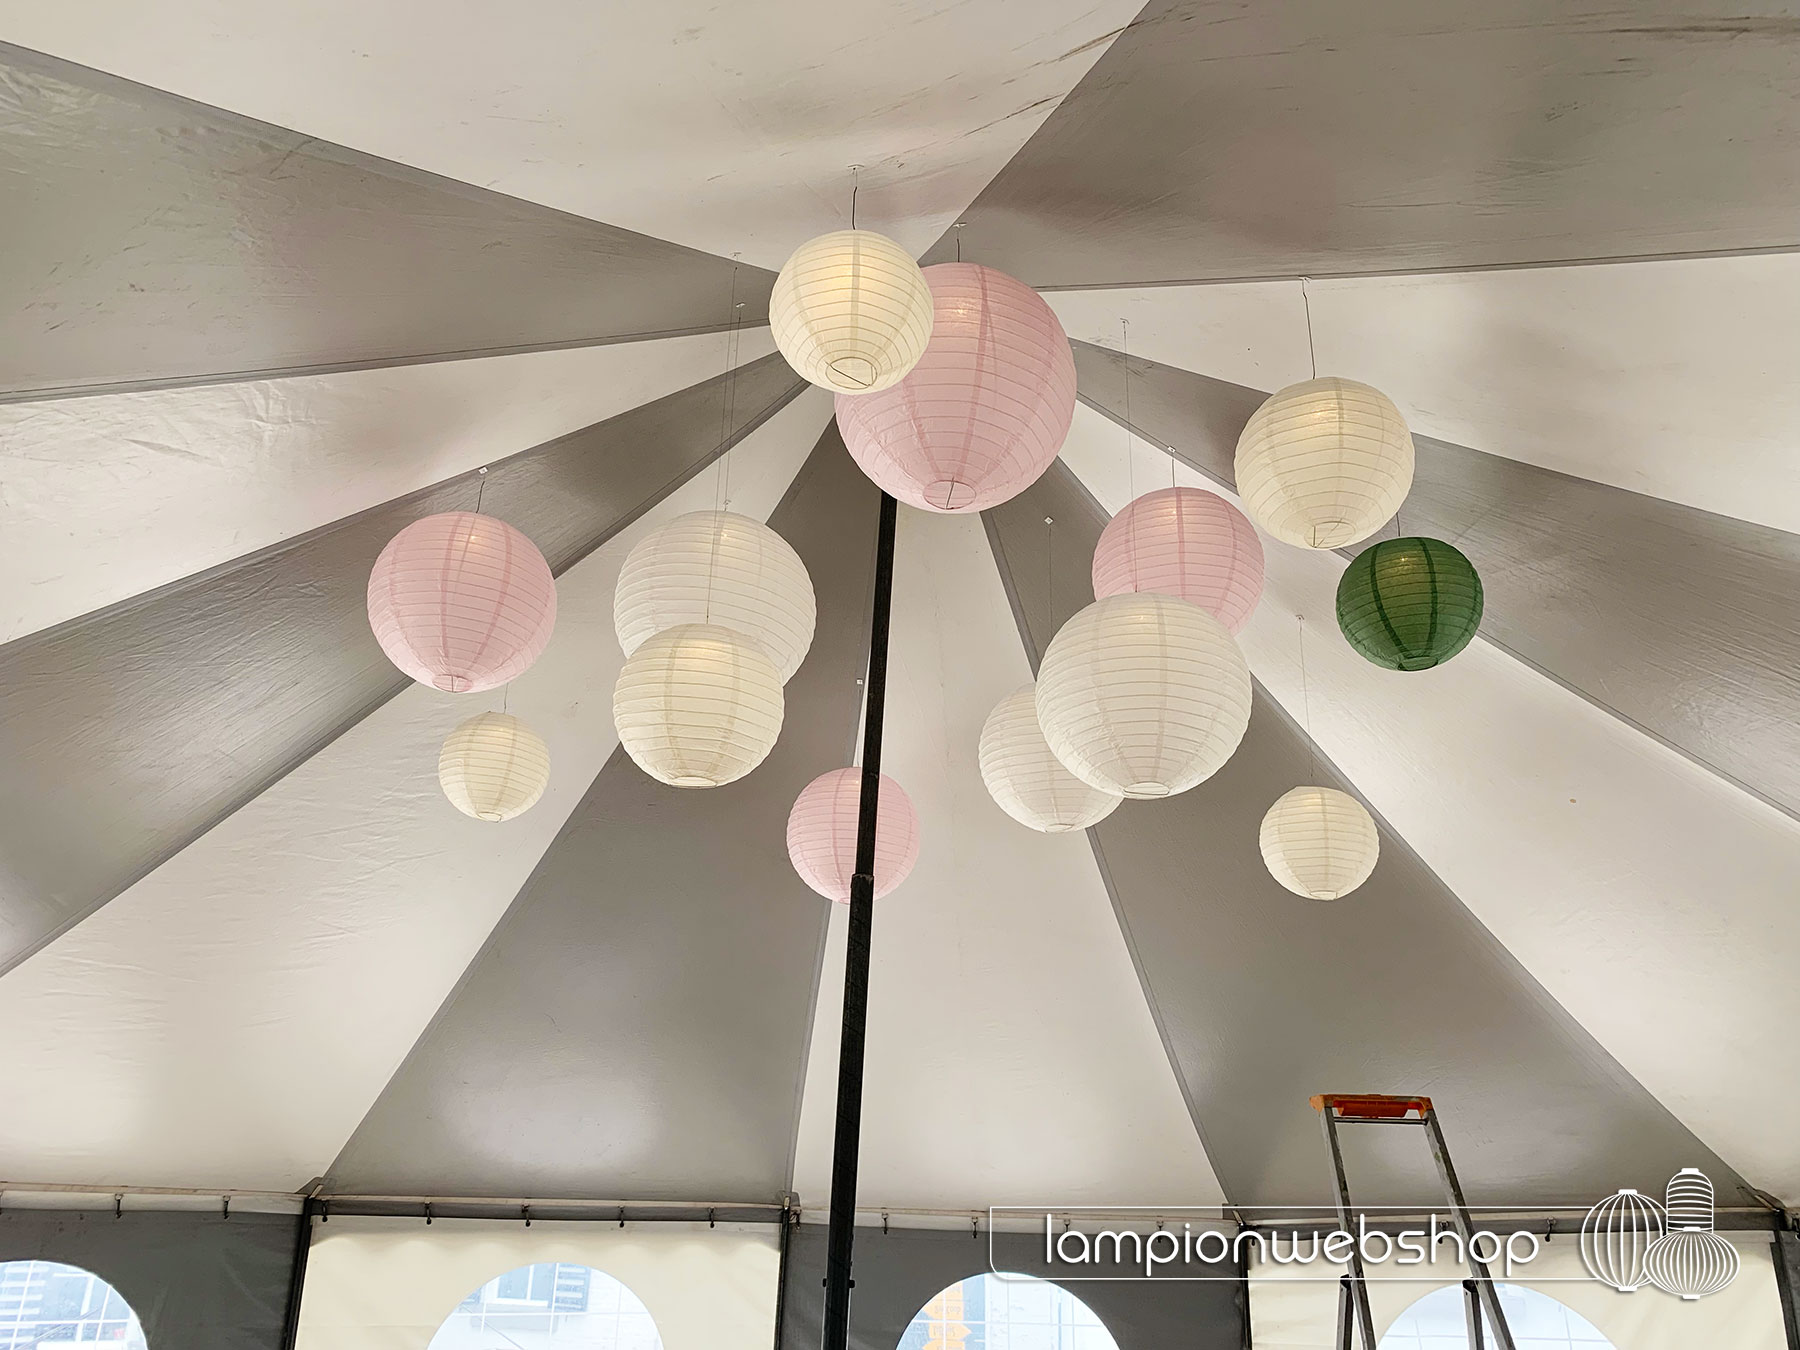 Hochzeitszeltdekoration - Lampionwebshop